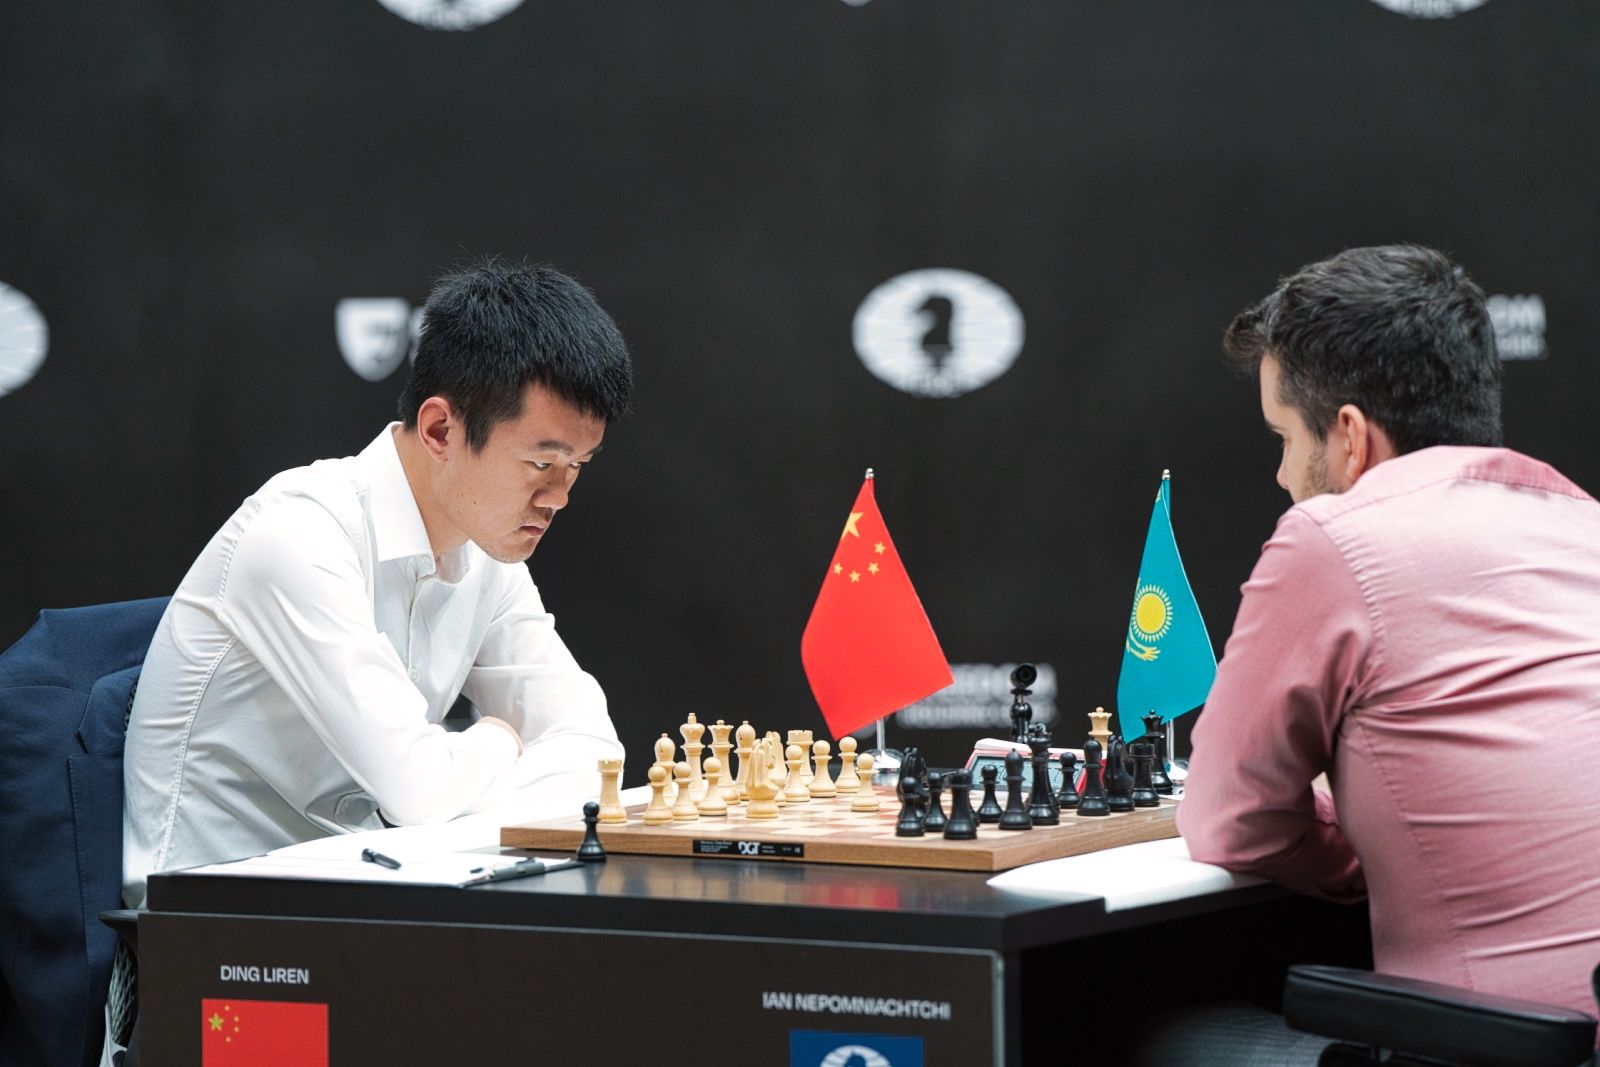 FIDE World Chess Championship Game 1: Nepo Impresses Under Pressure - Chess .com